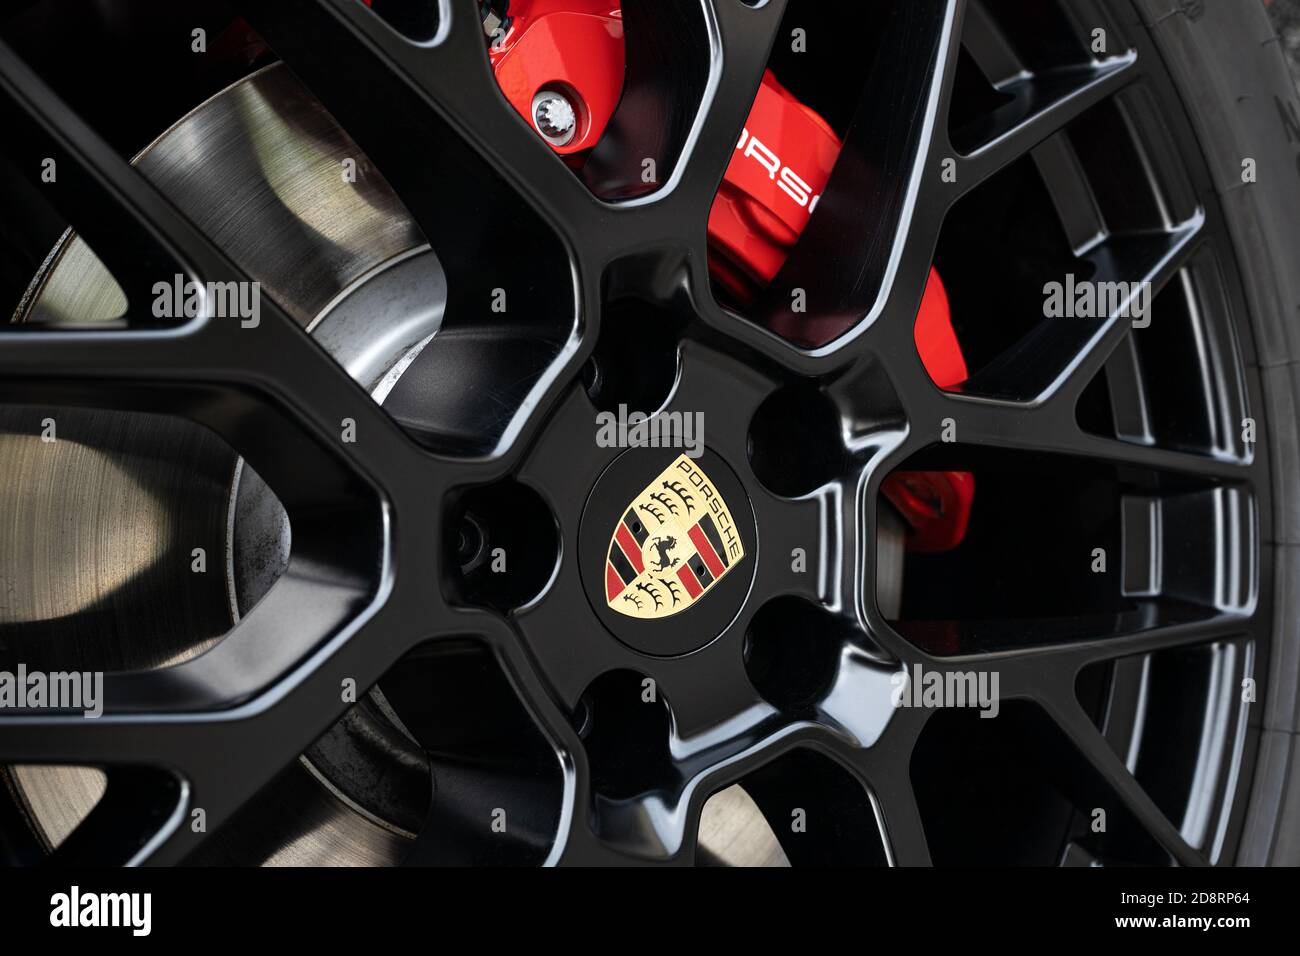 Galicia, Spain. October 30 2020: Black Wheel rim and red brake caliper of a Porsche car Stock Photo